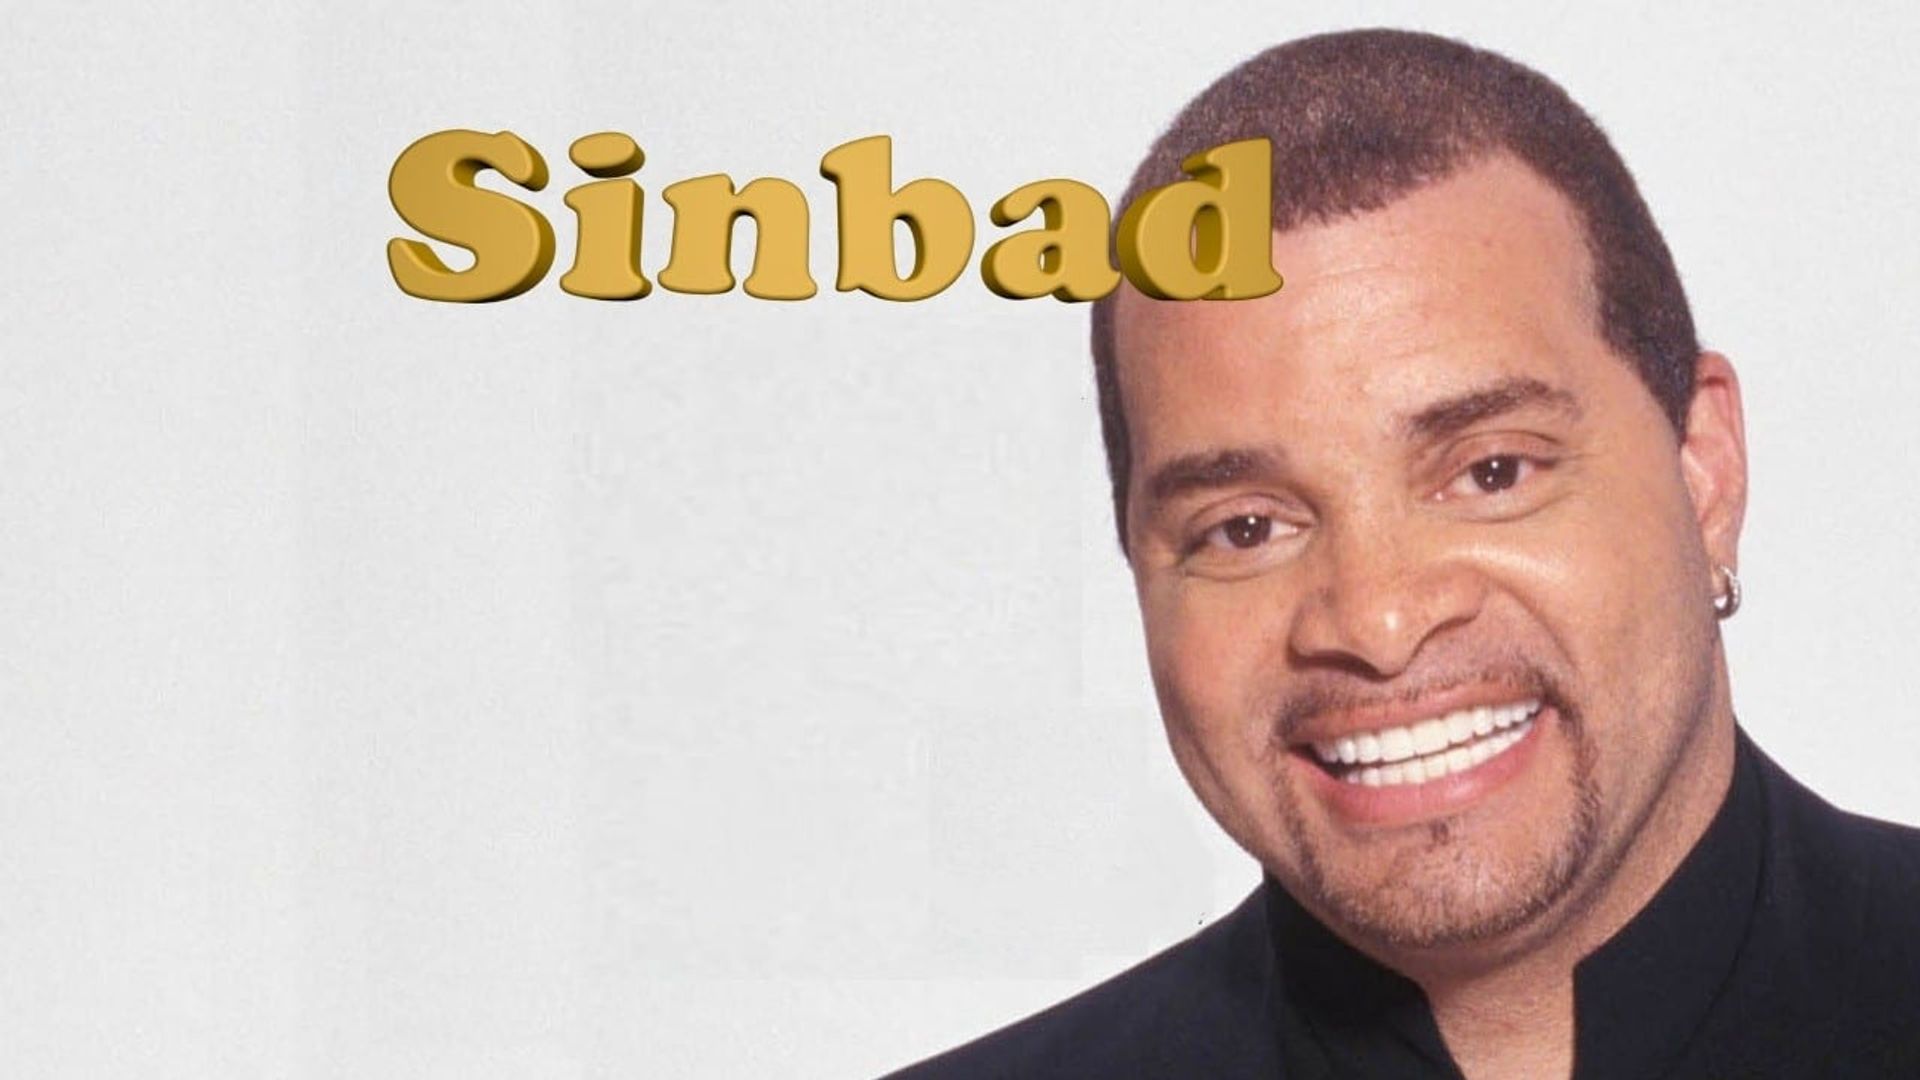 The Sinbad Show background